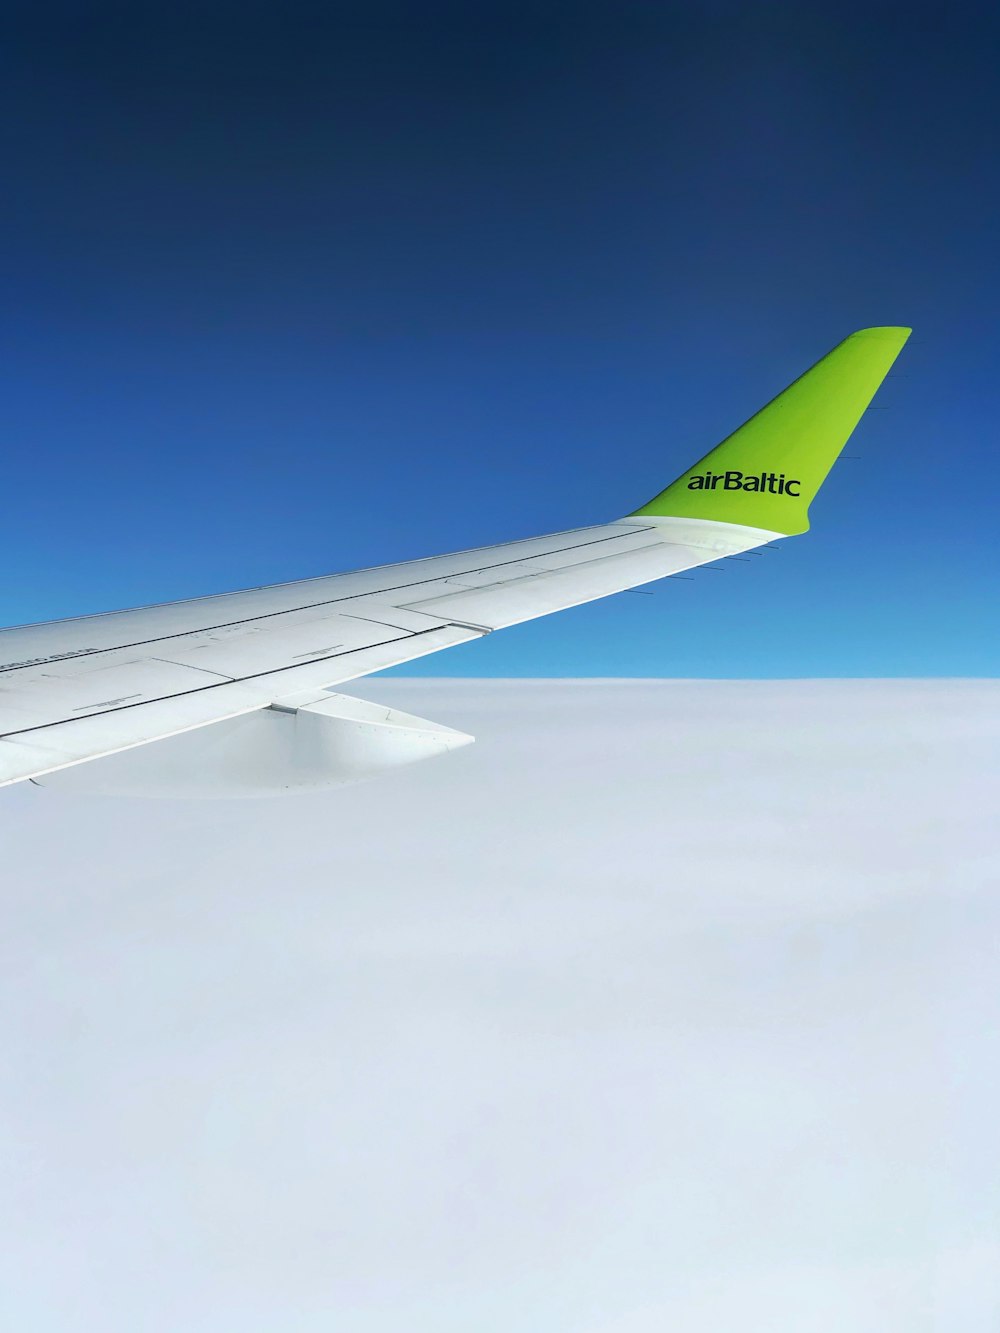 Ala de avión blanca y verde